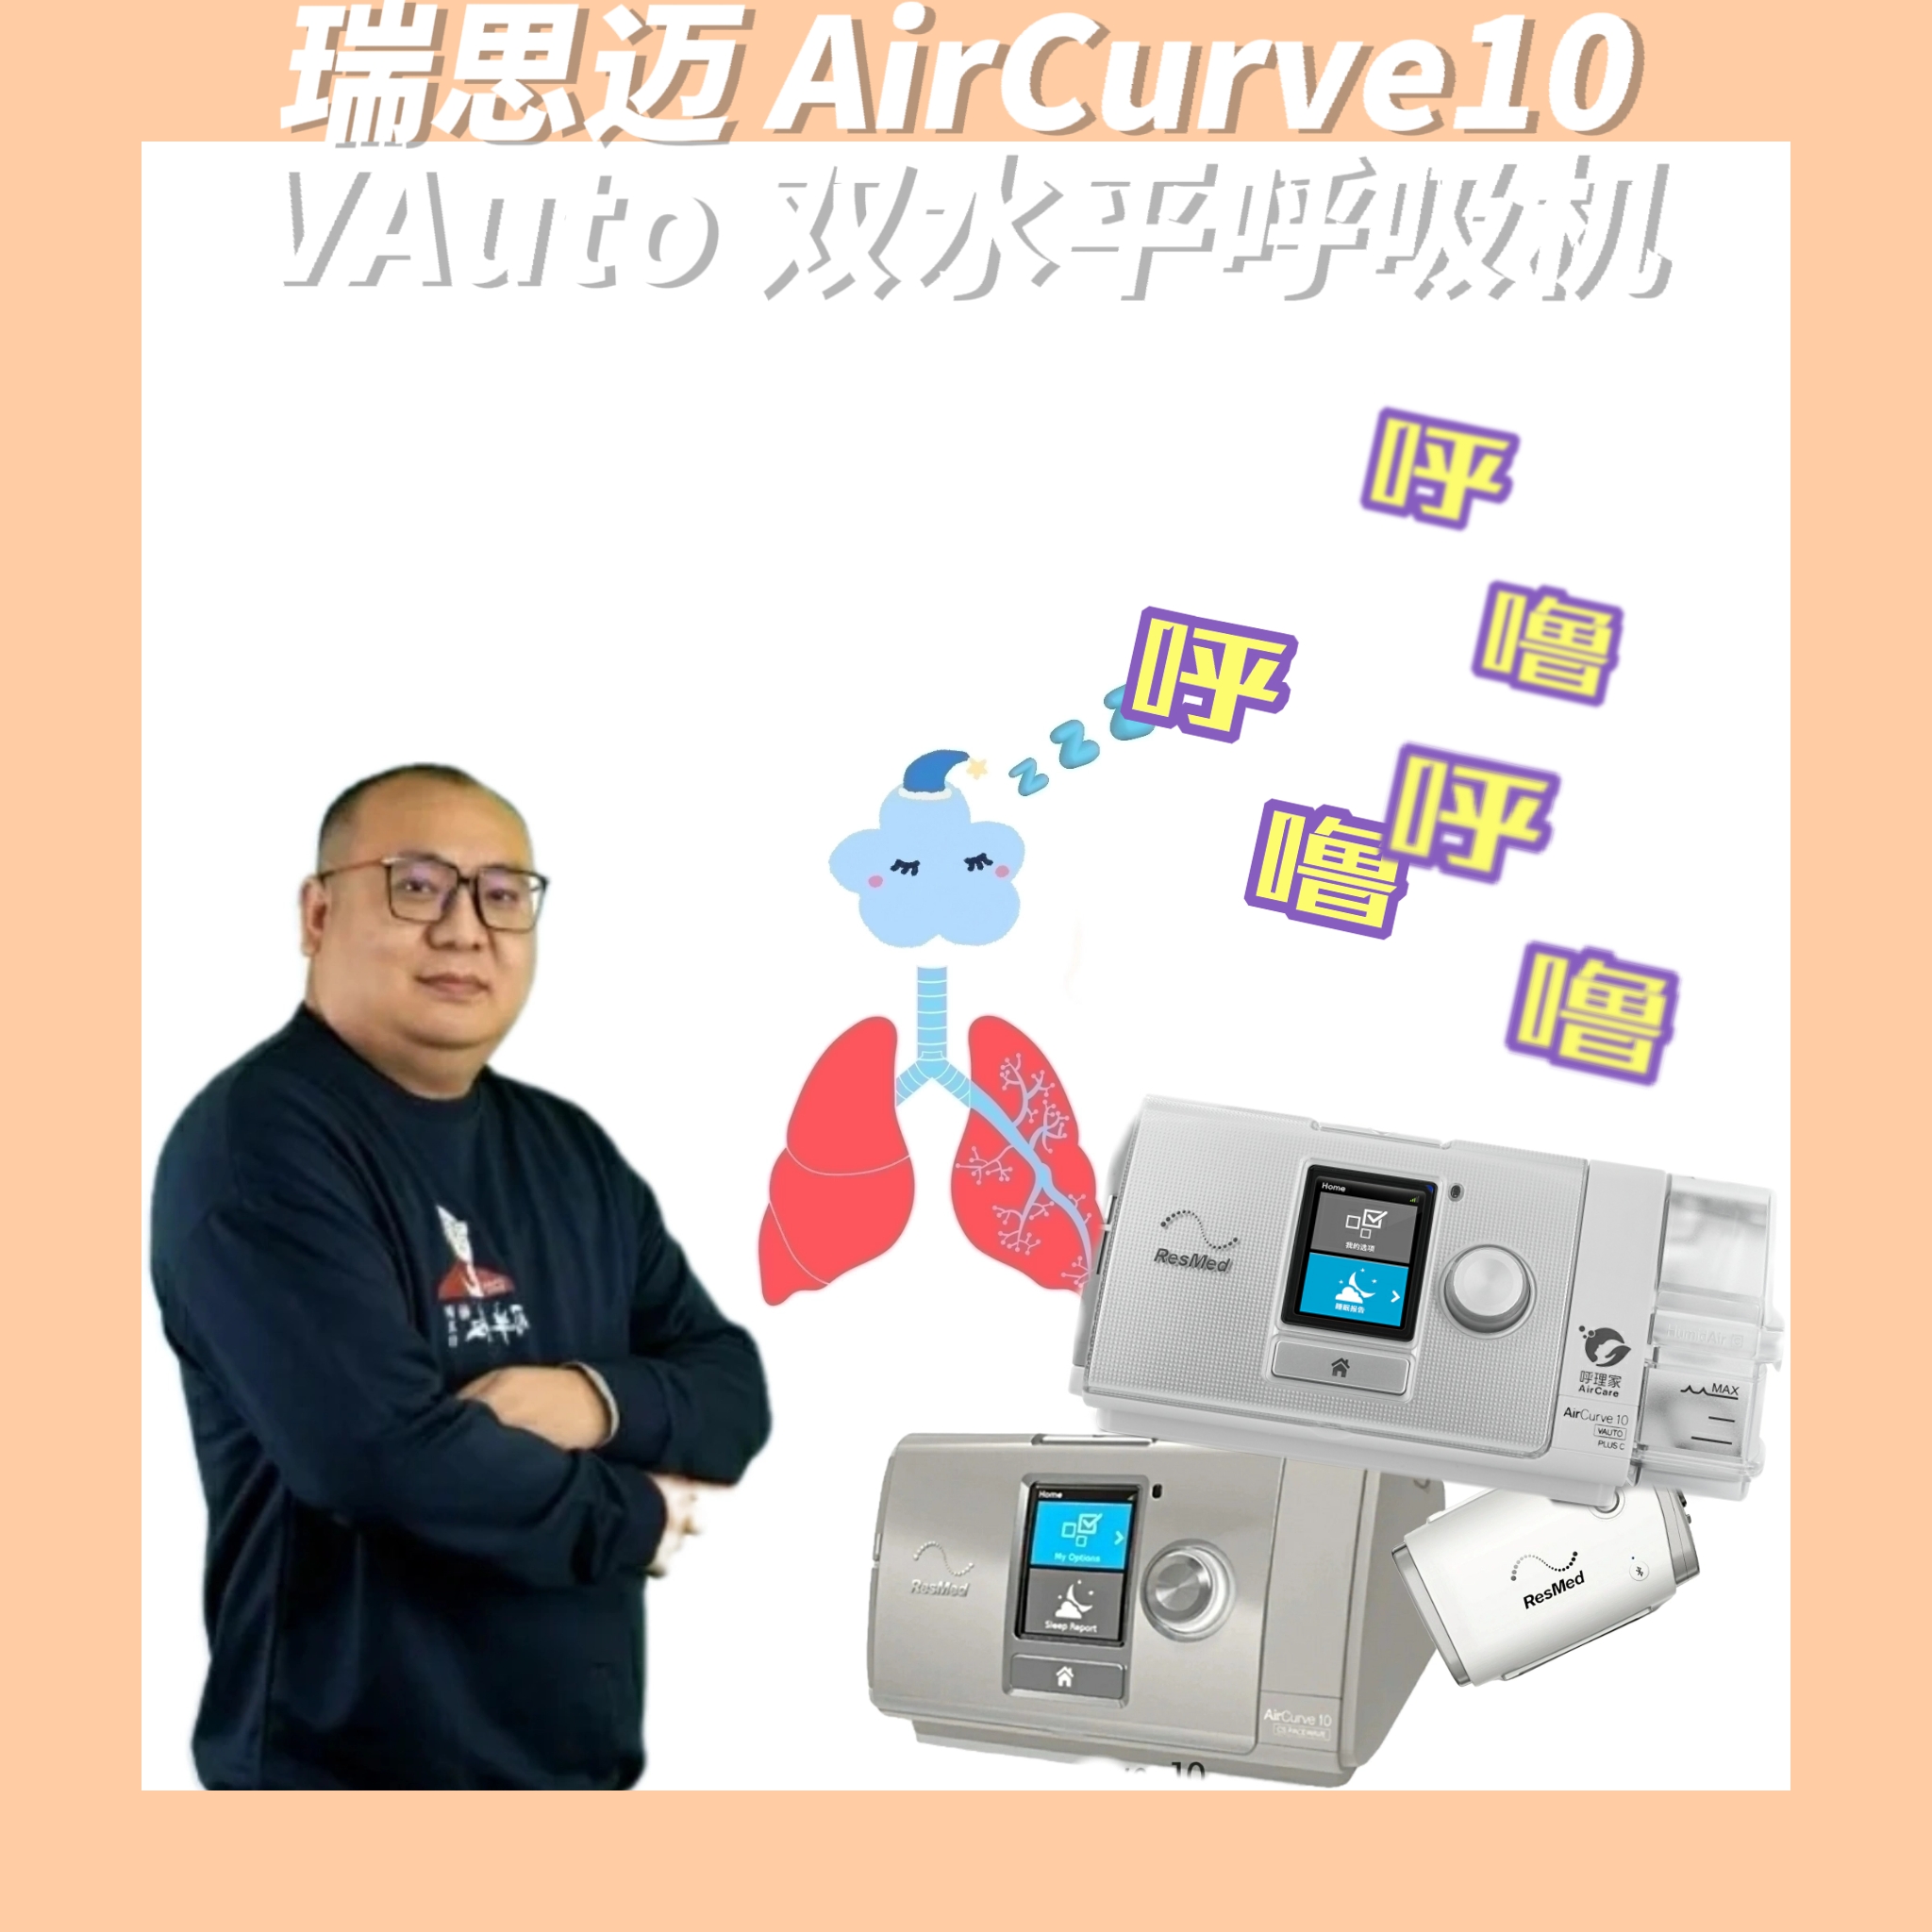 瑞思迈 aircurve10 vauto 双水平呼吸机